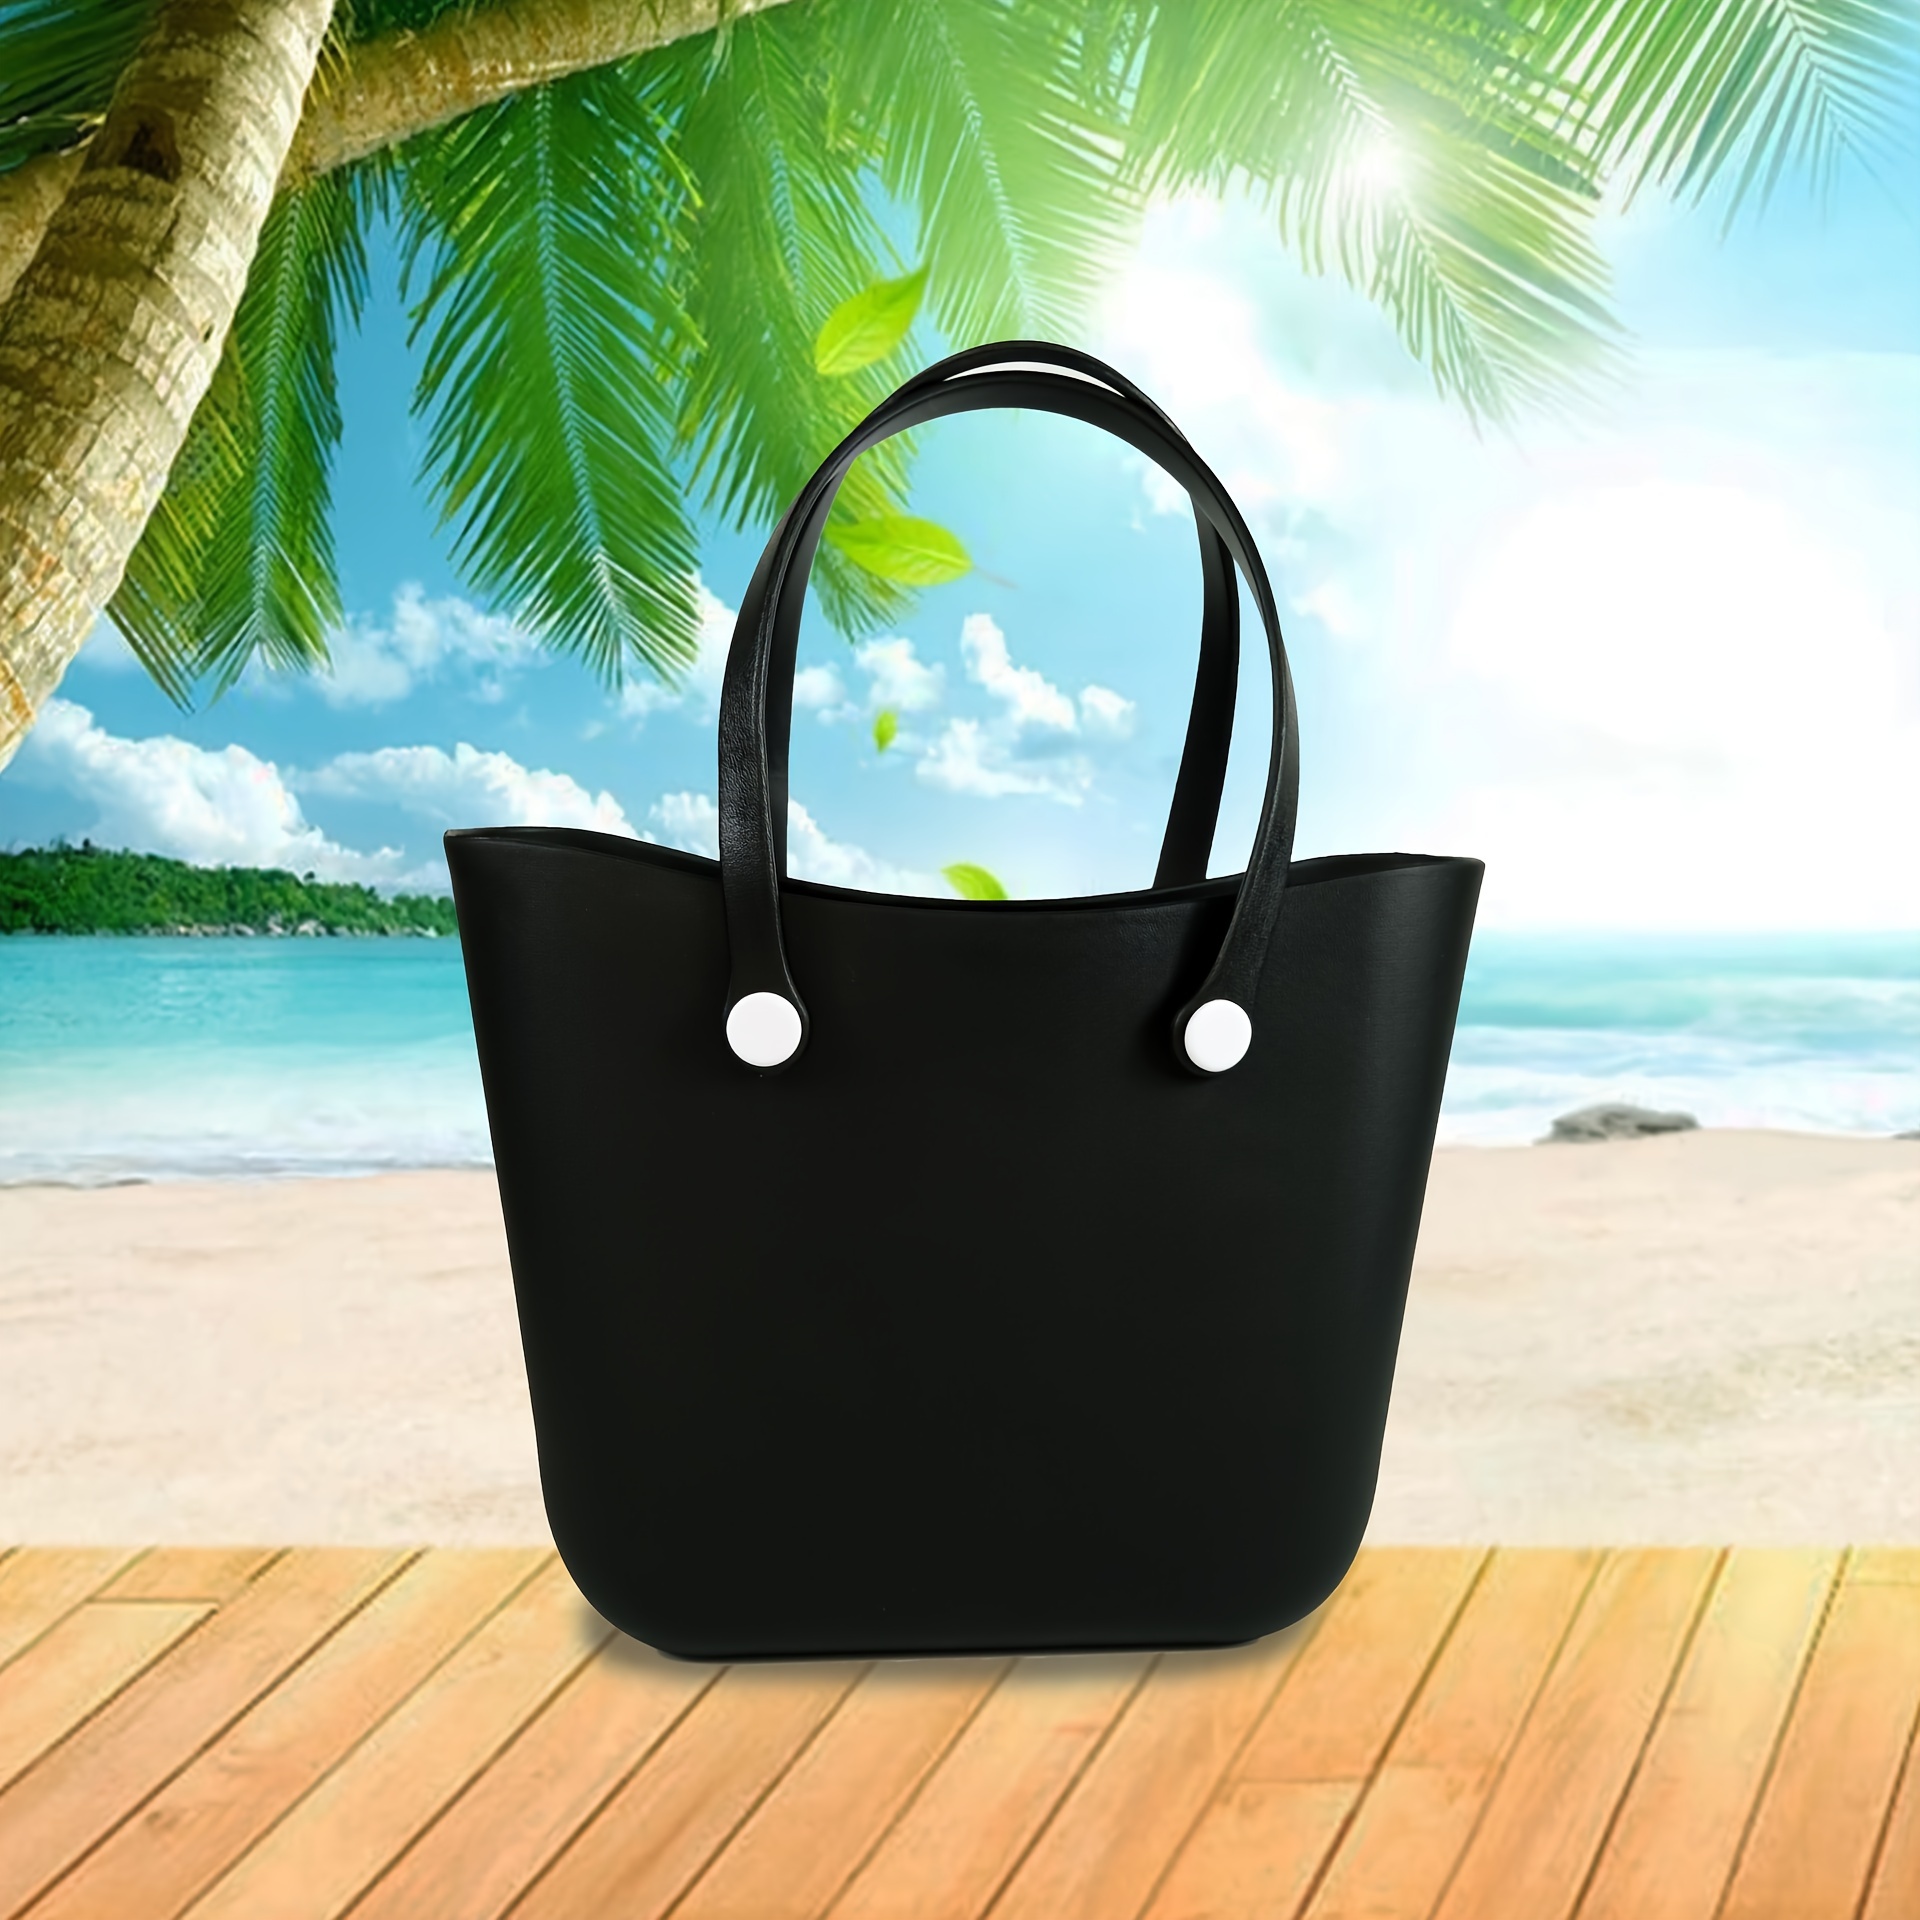 Solid Color Waterproof Beach Bag, Portable Handbag For Outdoor